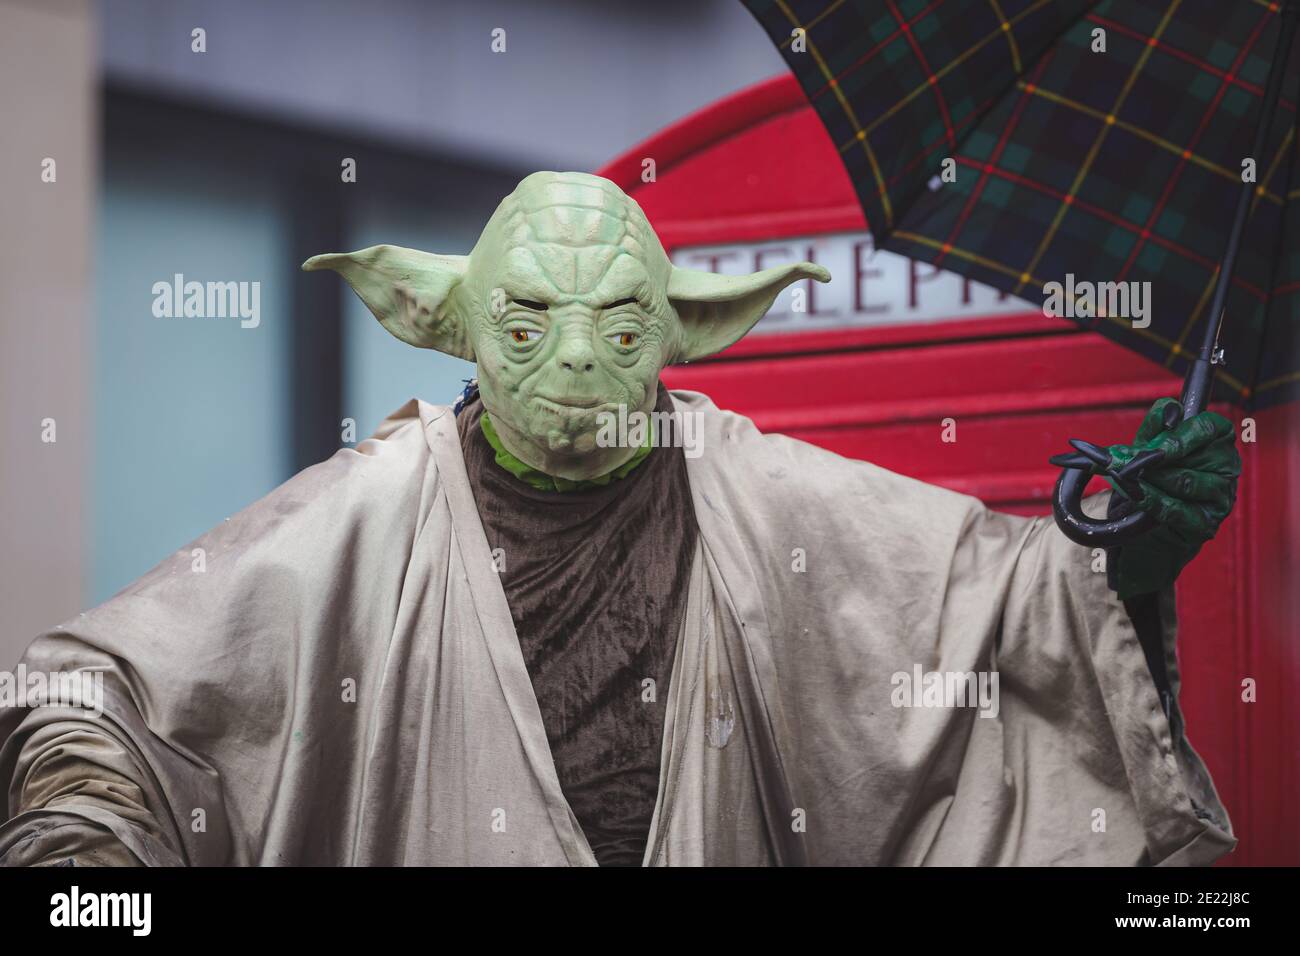 Yoda costume immagini e fotografie stock ad alta risoluzione - Alamy